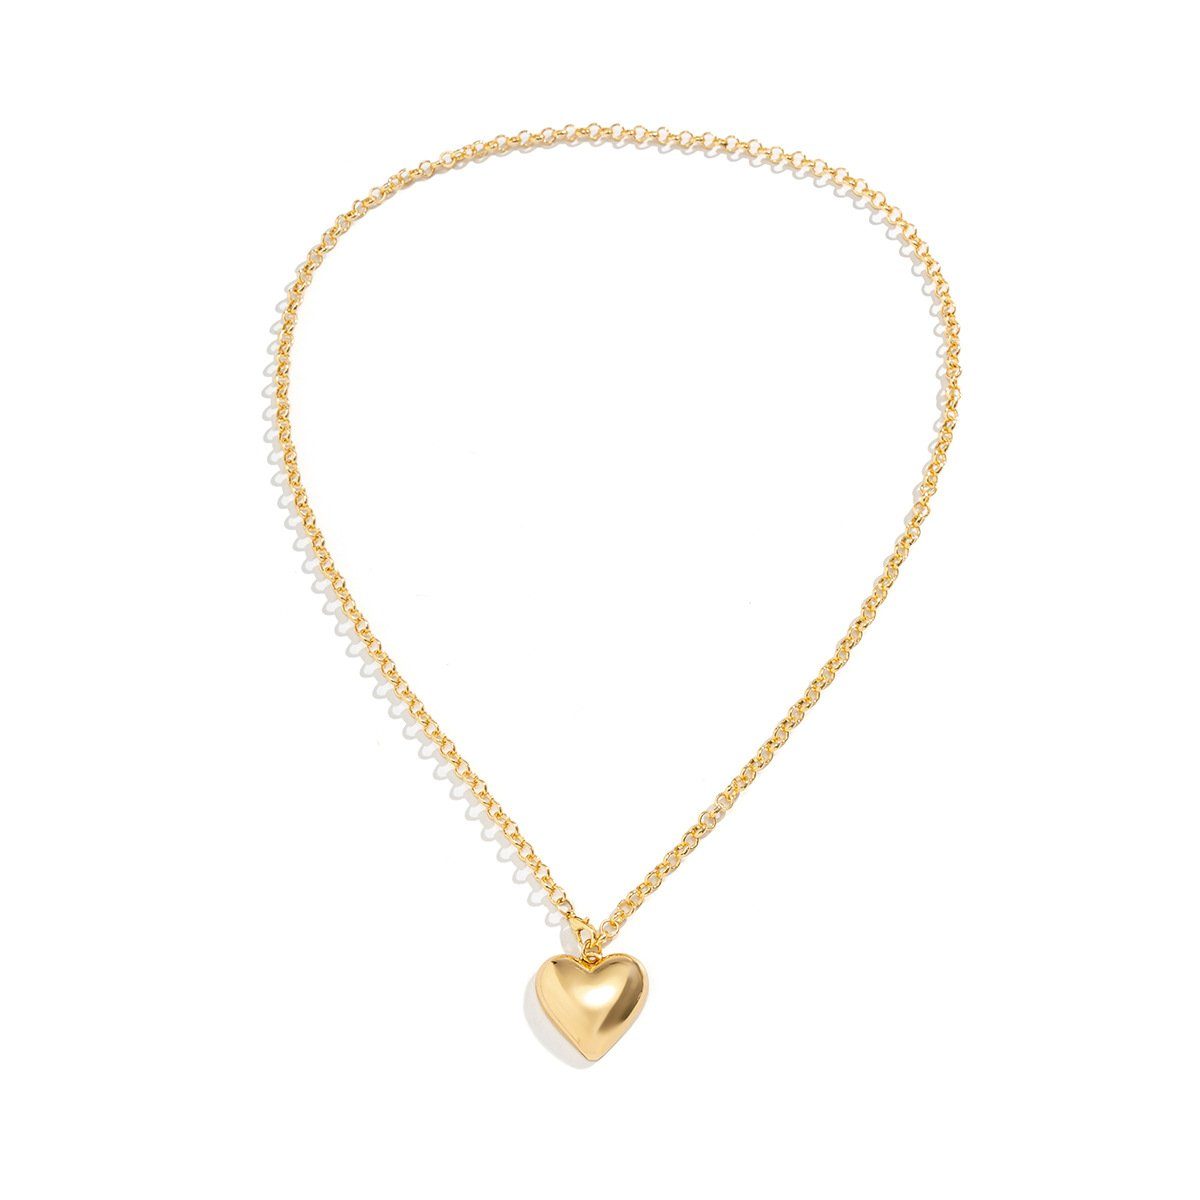 SCOZBT Herzkette Herz-Anhänger Halskette Karabinerverschluss (1-tlg), Liebeskette Halskette Damenmode Gold / Silber Golden